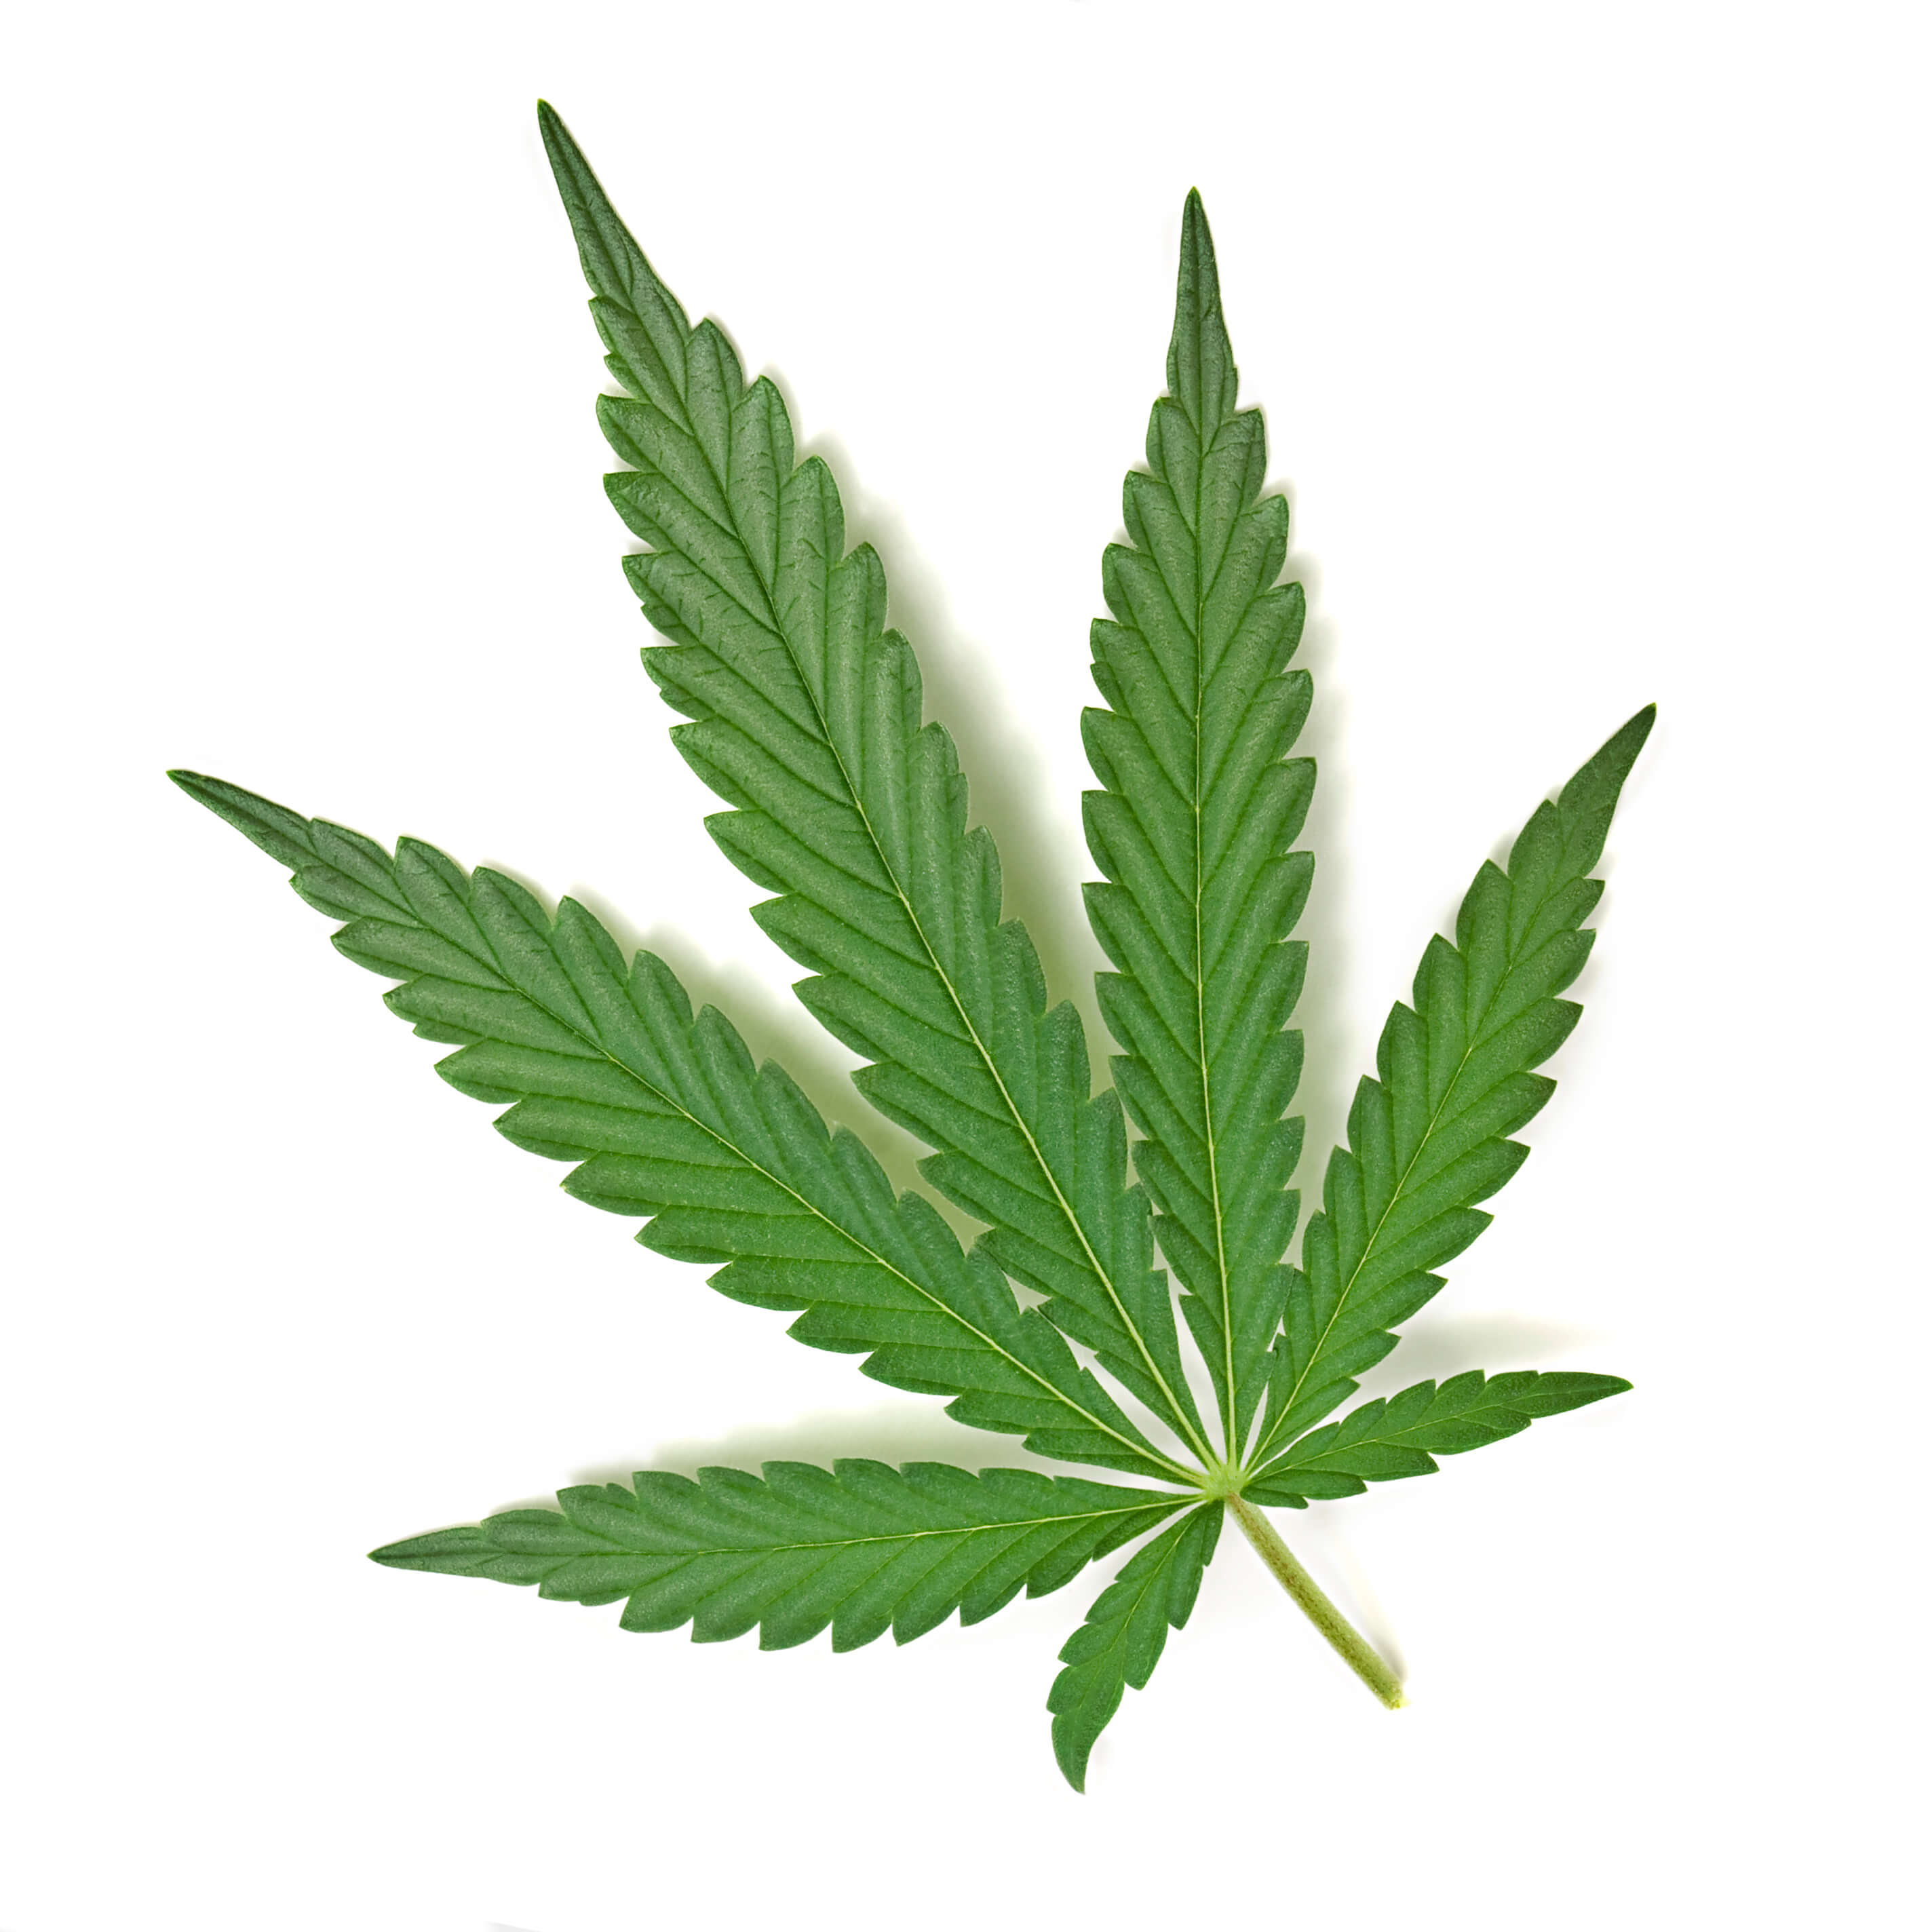 Image: green cannabis leaf